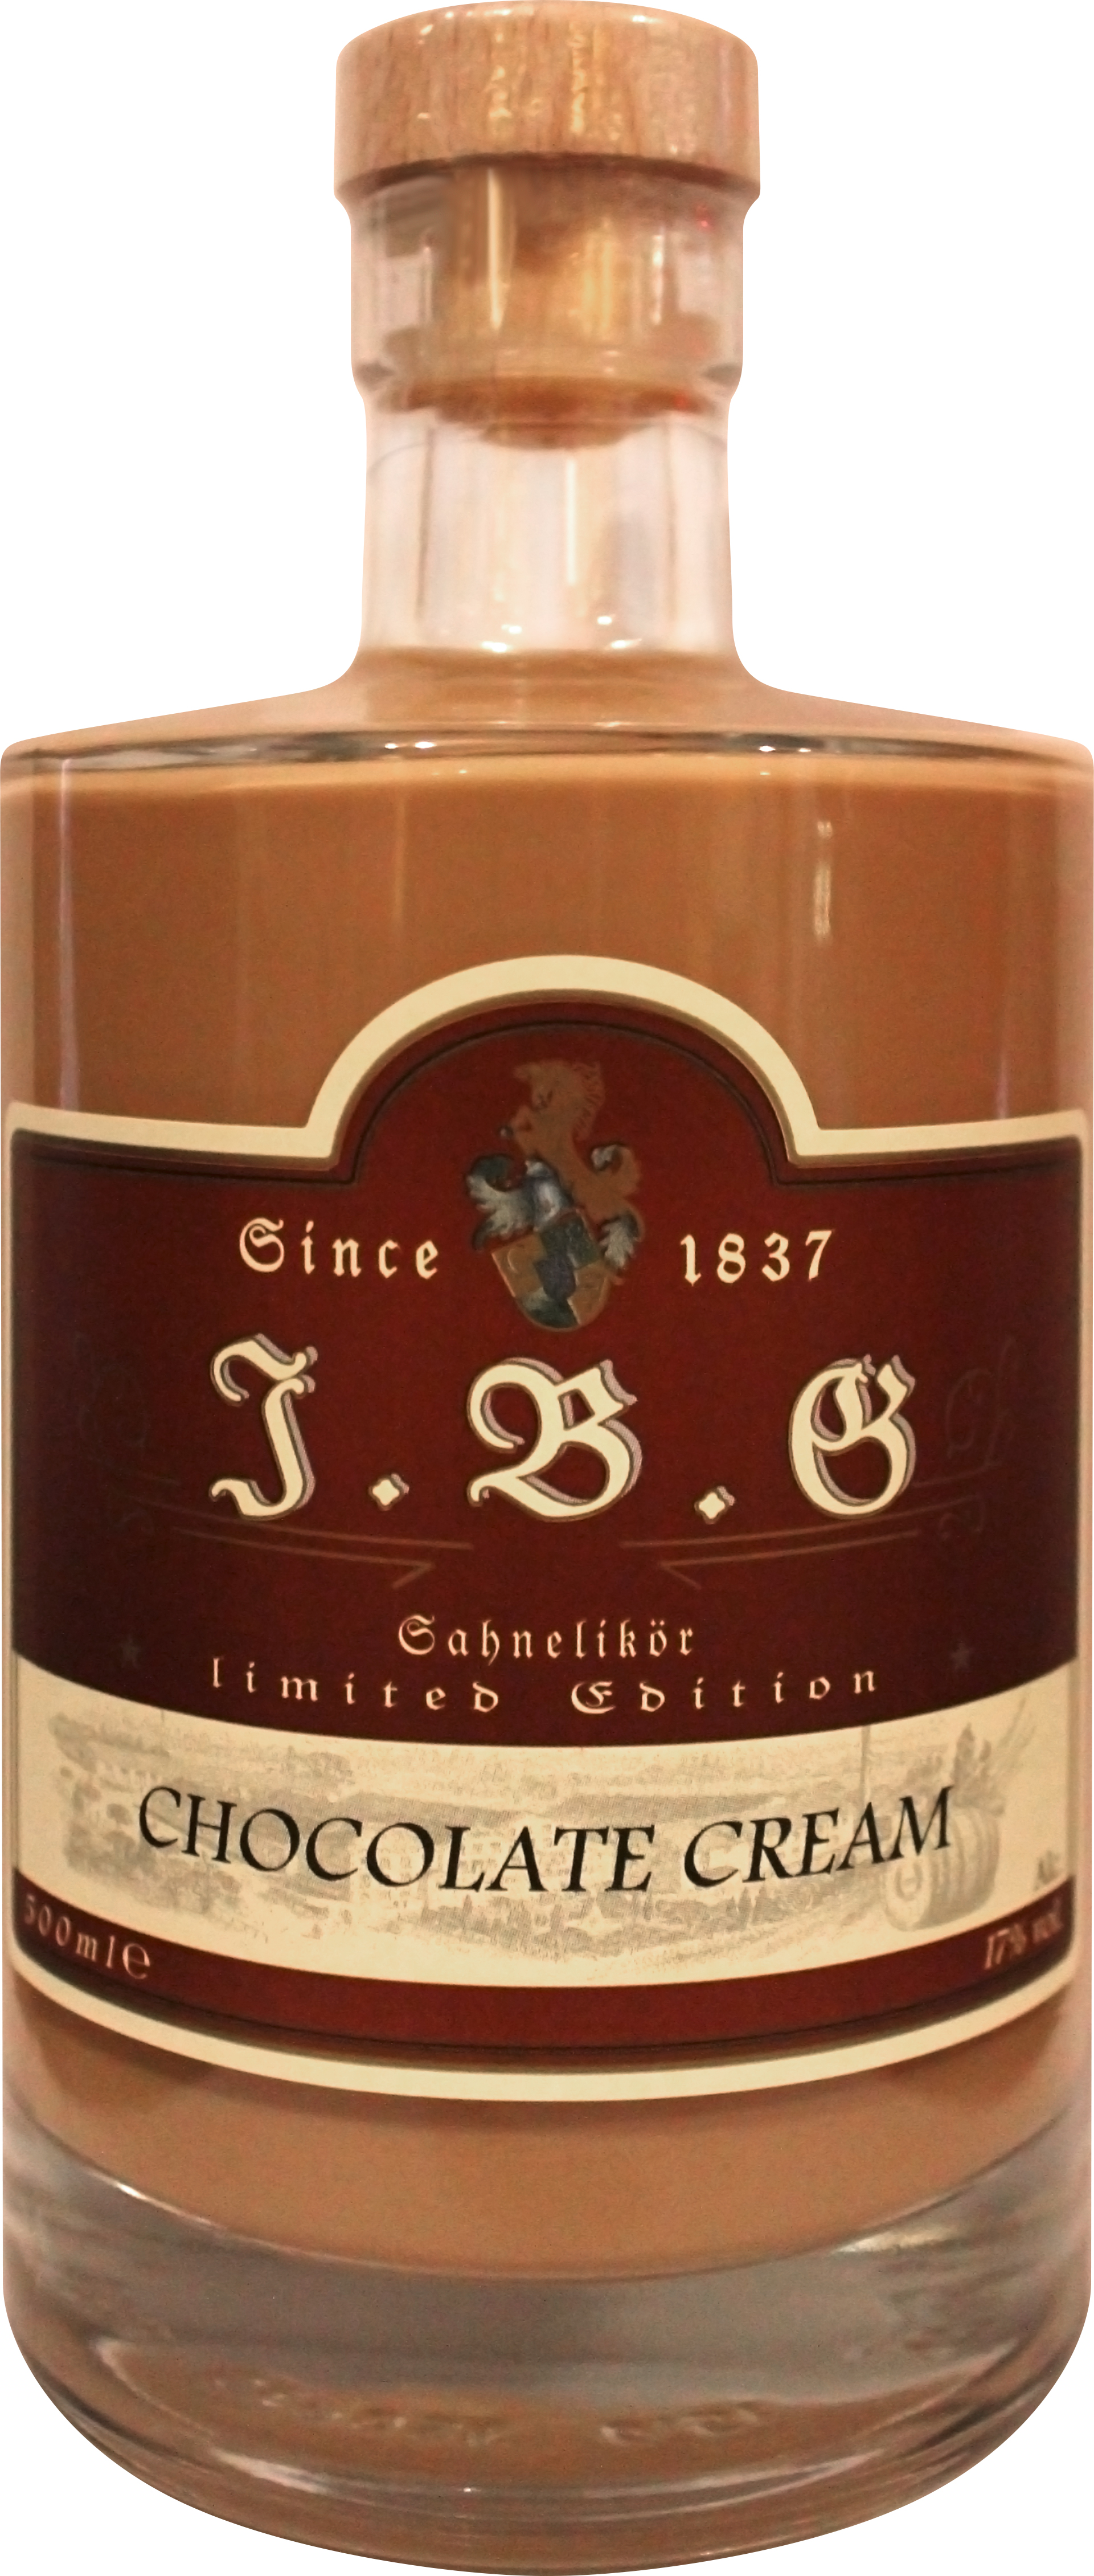 Chocolate Cream 17%vol., 0,5 Gutsbrennerei | Geuting ltr. Sahnelikör